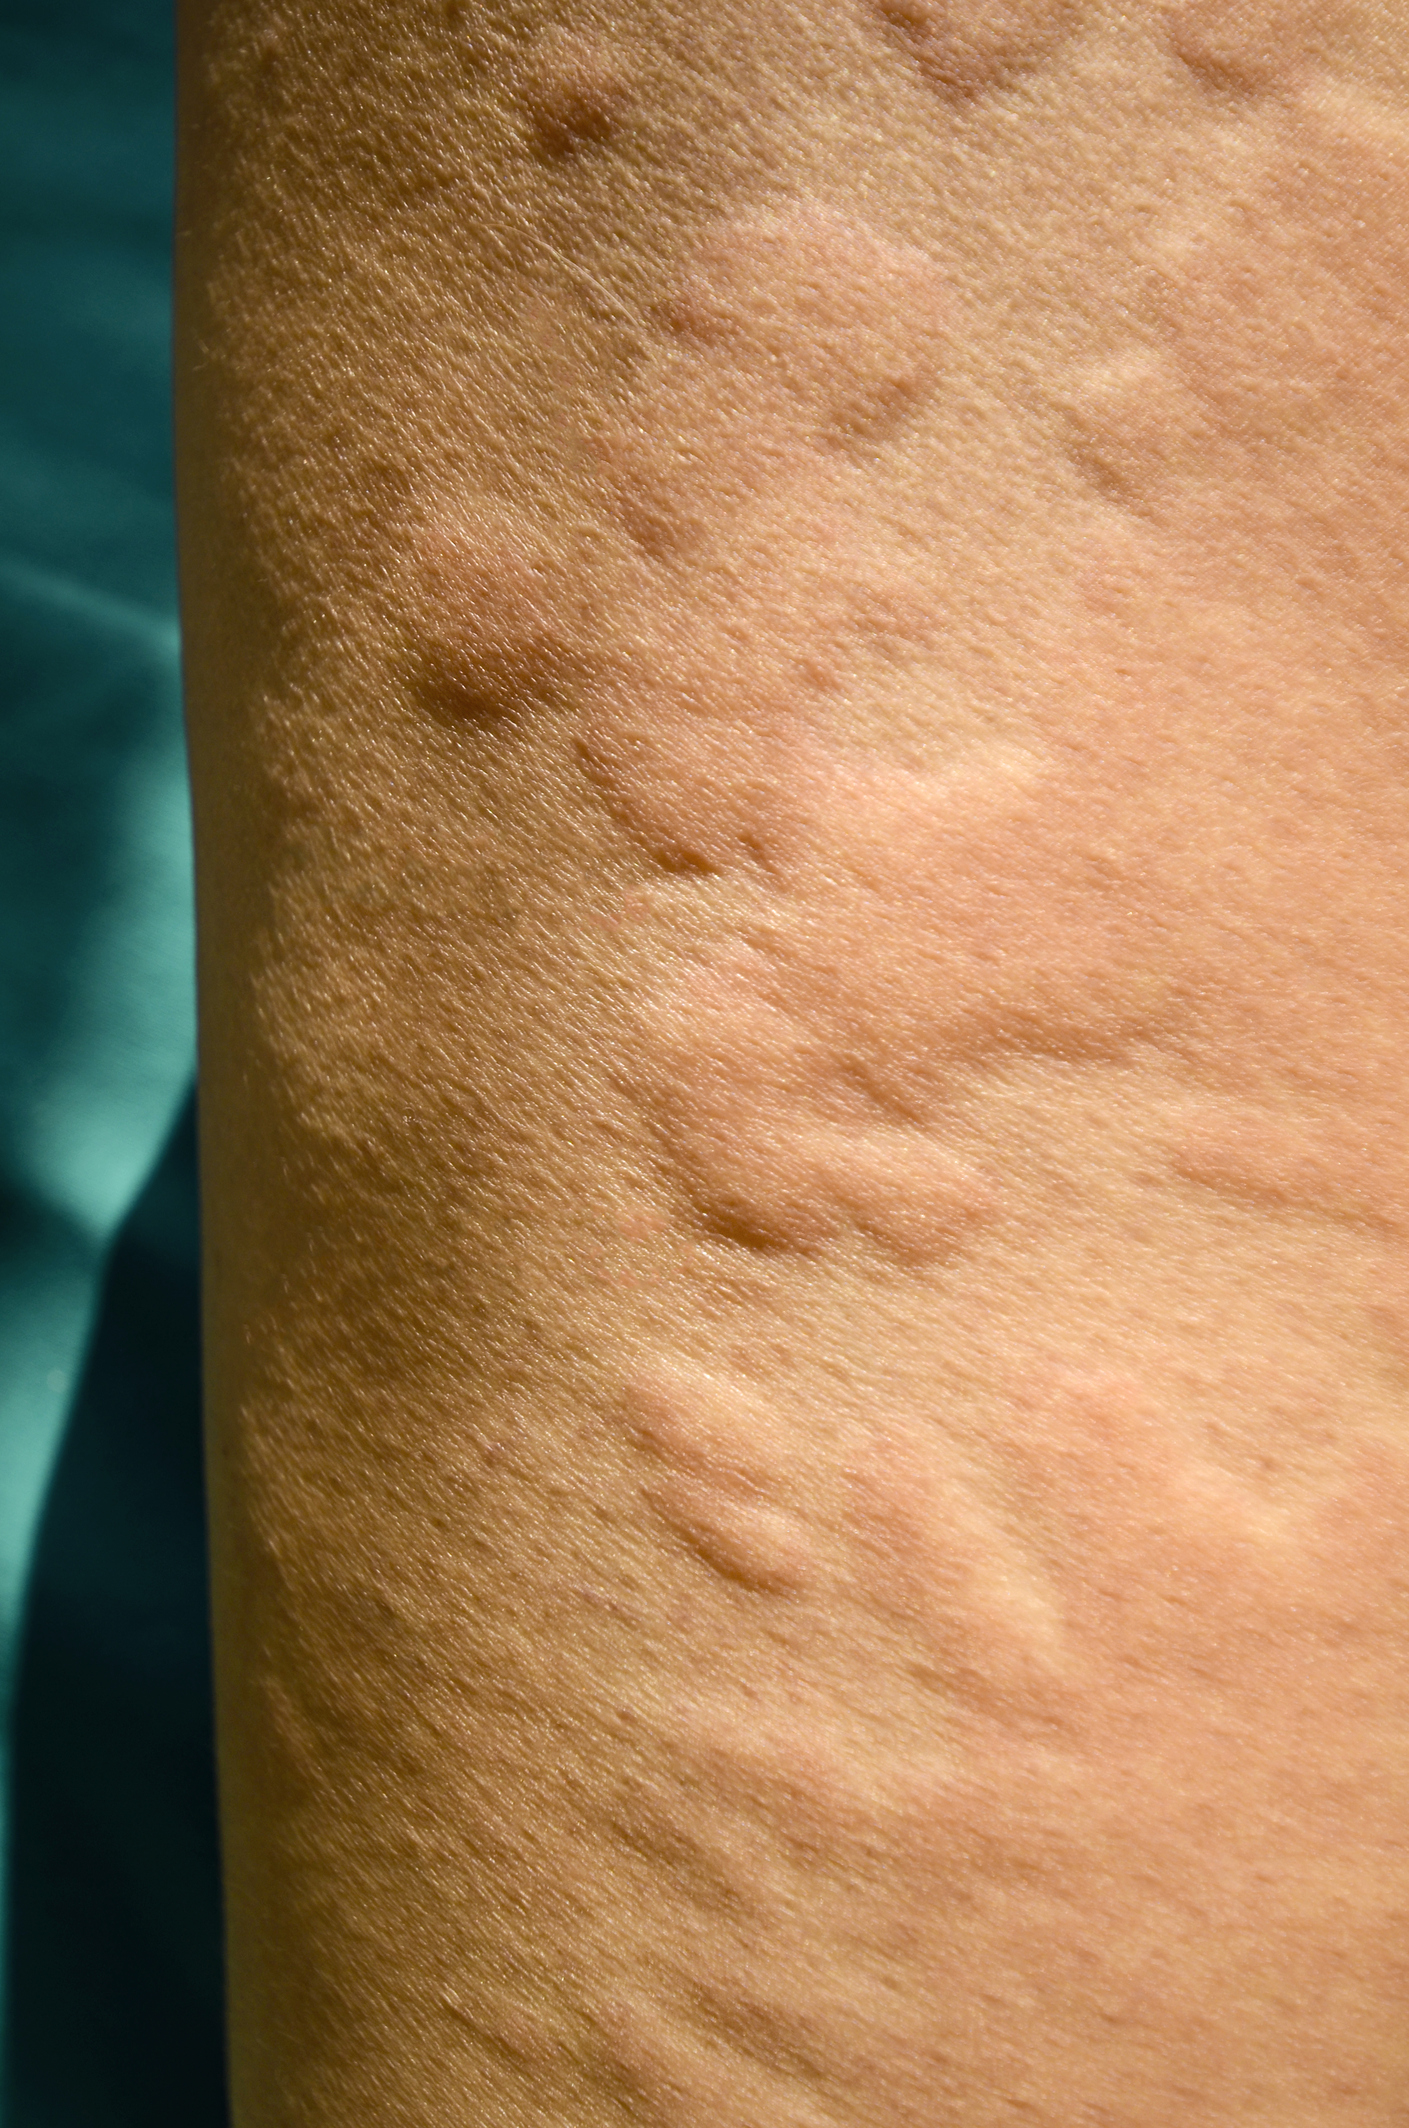 žihľavka alergický ekzém - malé pupence vystupujú nad úroveň pokožky